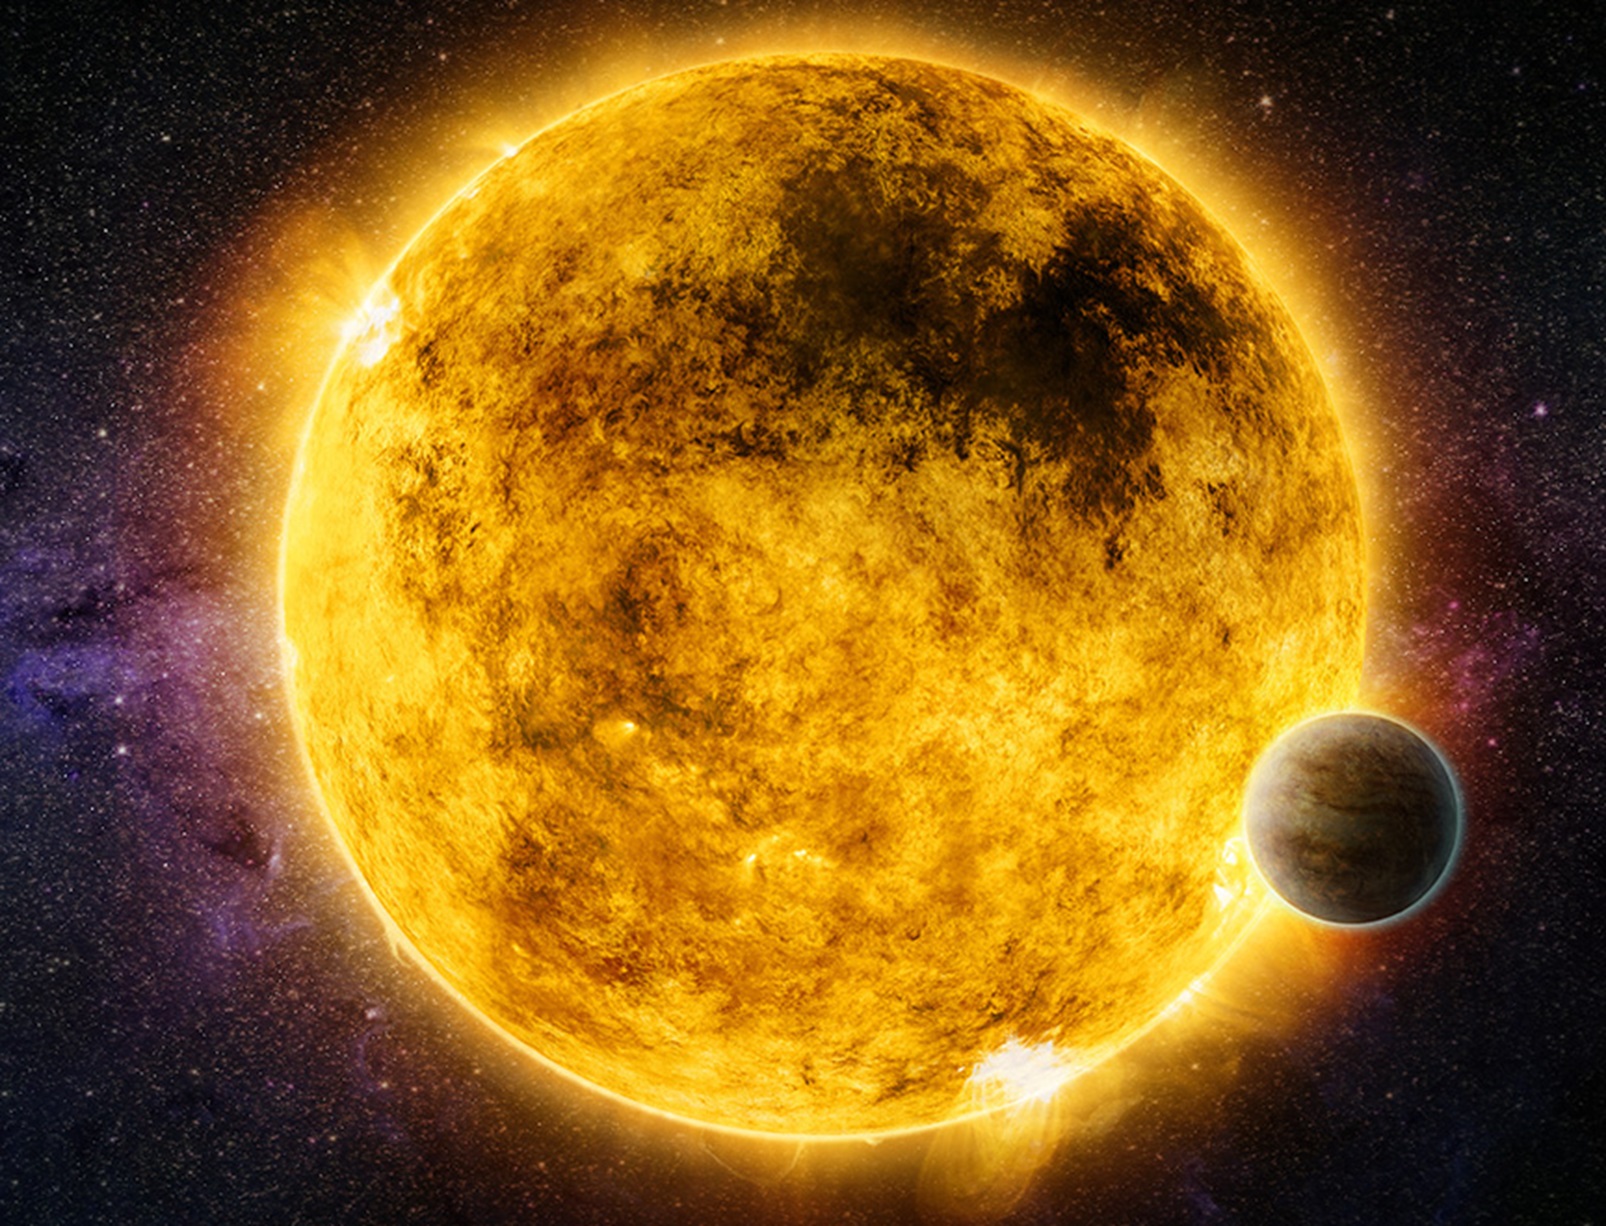 Une vue d'une exoplanète bombardée par les rayons X de son soleil. © Nasa, CXC, M. Weiss